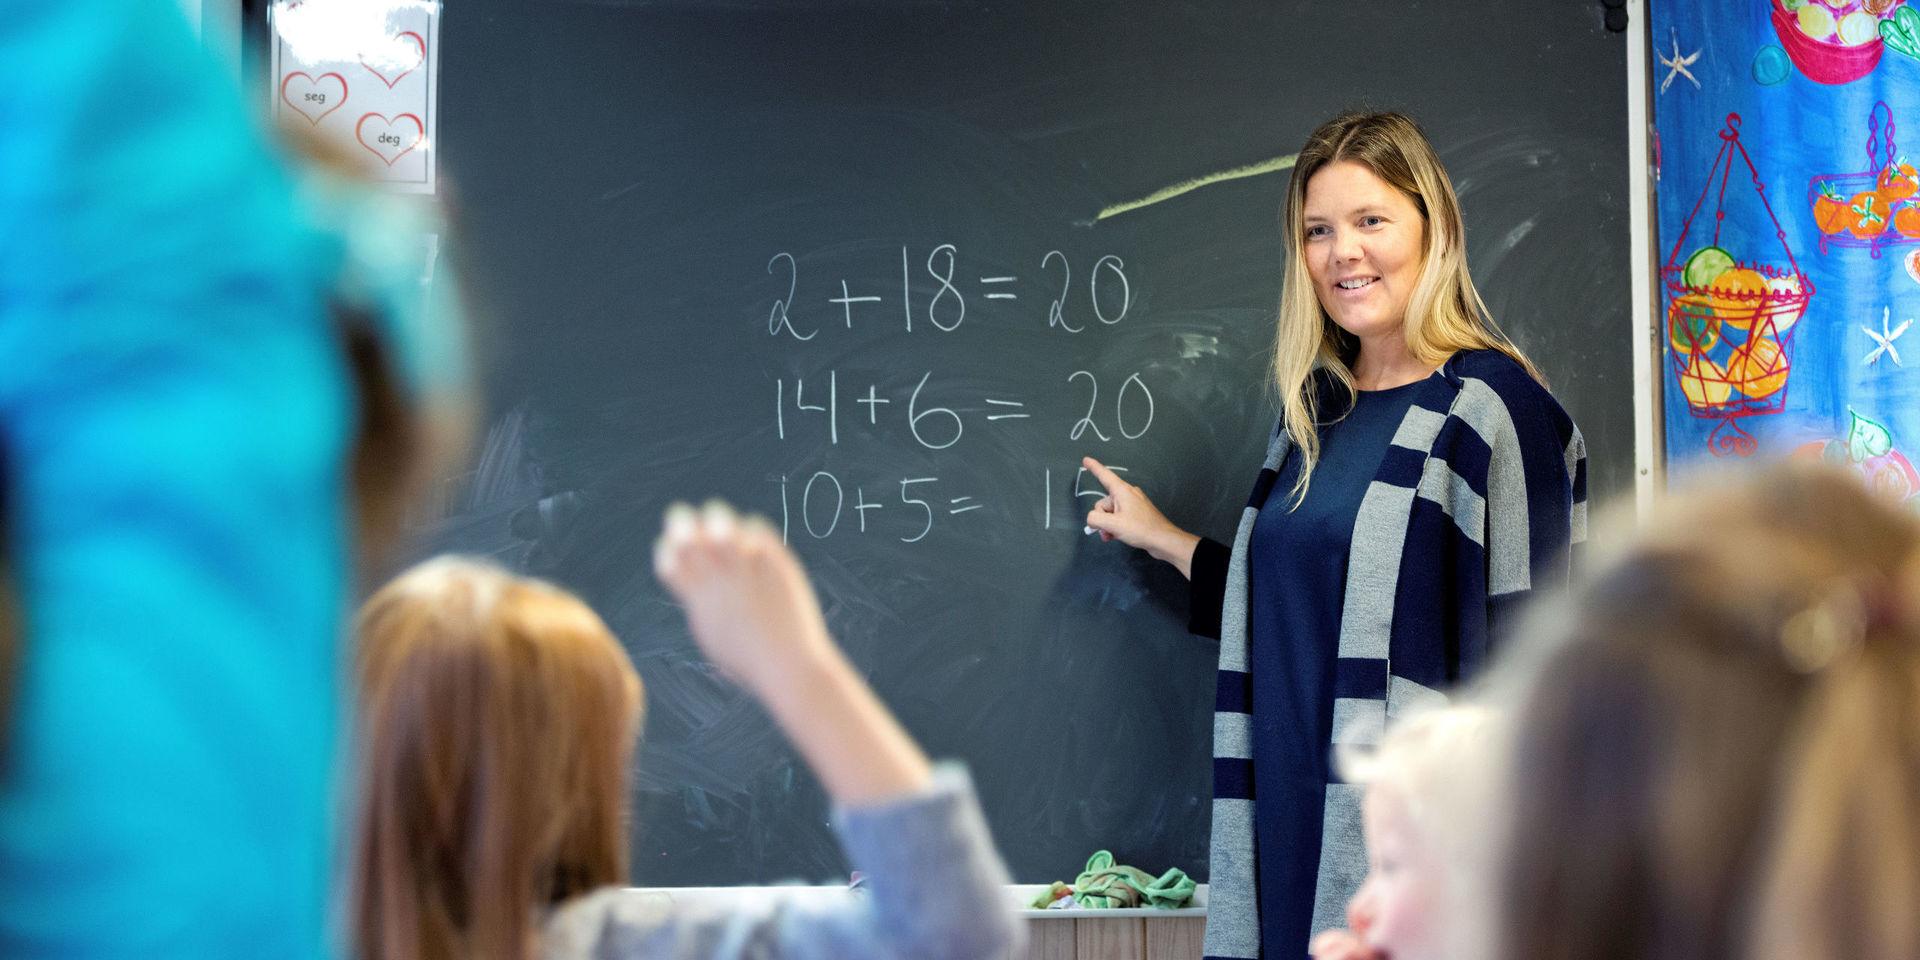 Visar vägen. Det behövs fler utbildade lärare i Sverige.